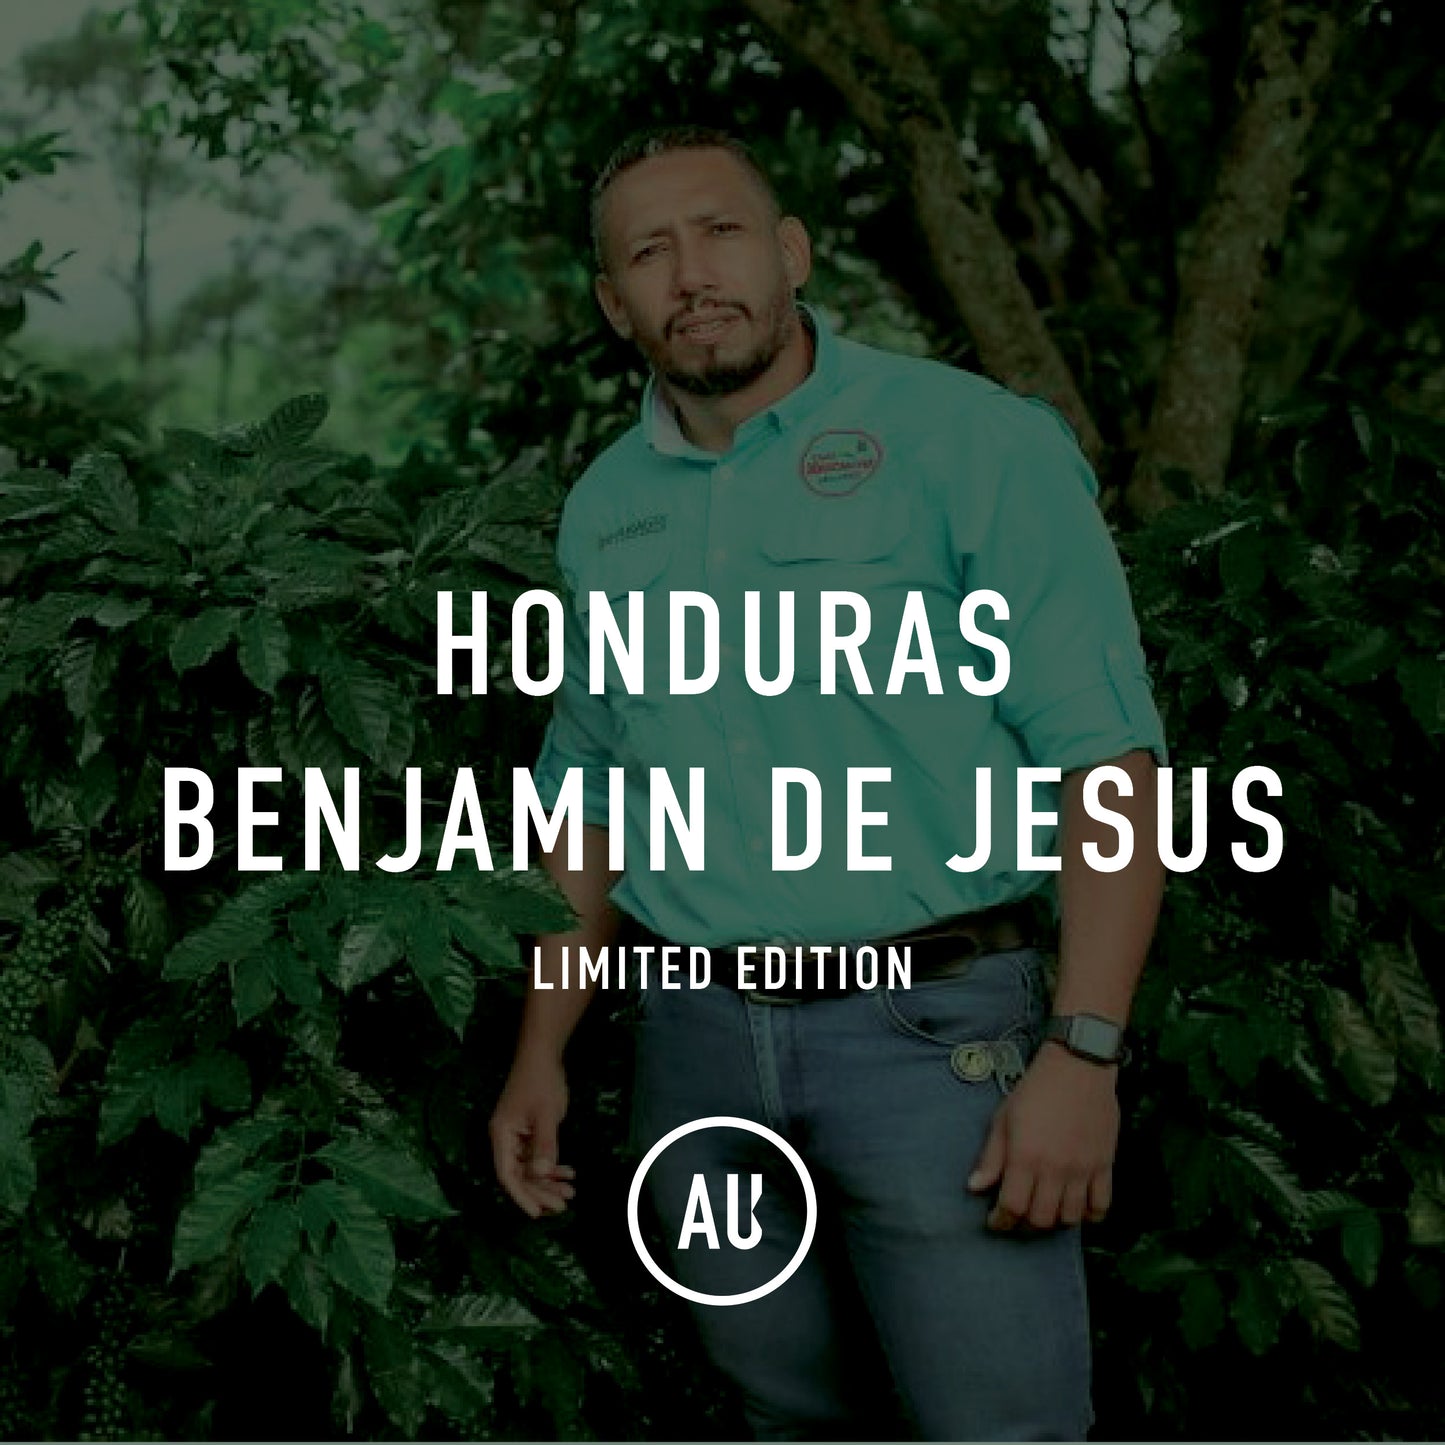 Honduras Benjamin de Jesus Maldonado 15kg